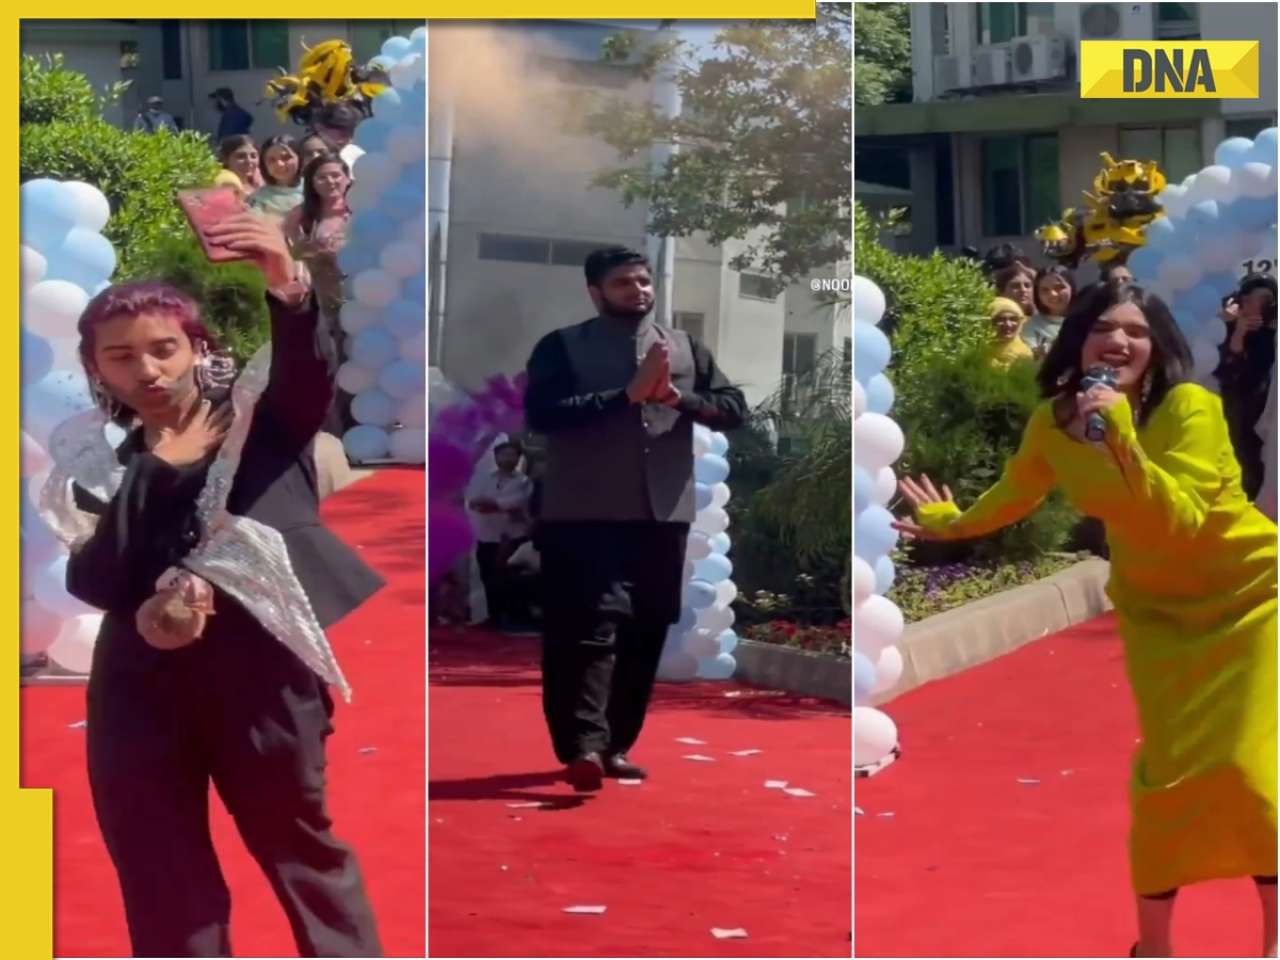 From Shahrukh to Rihanna: Pakistani students recreate Anant Ambani, Radhika Merchant pre-wedding theme walk, watch